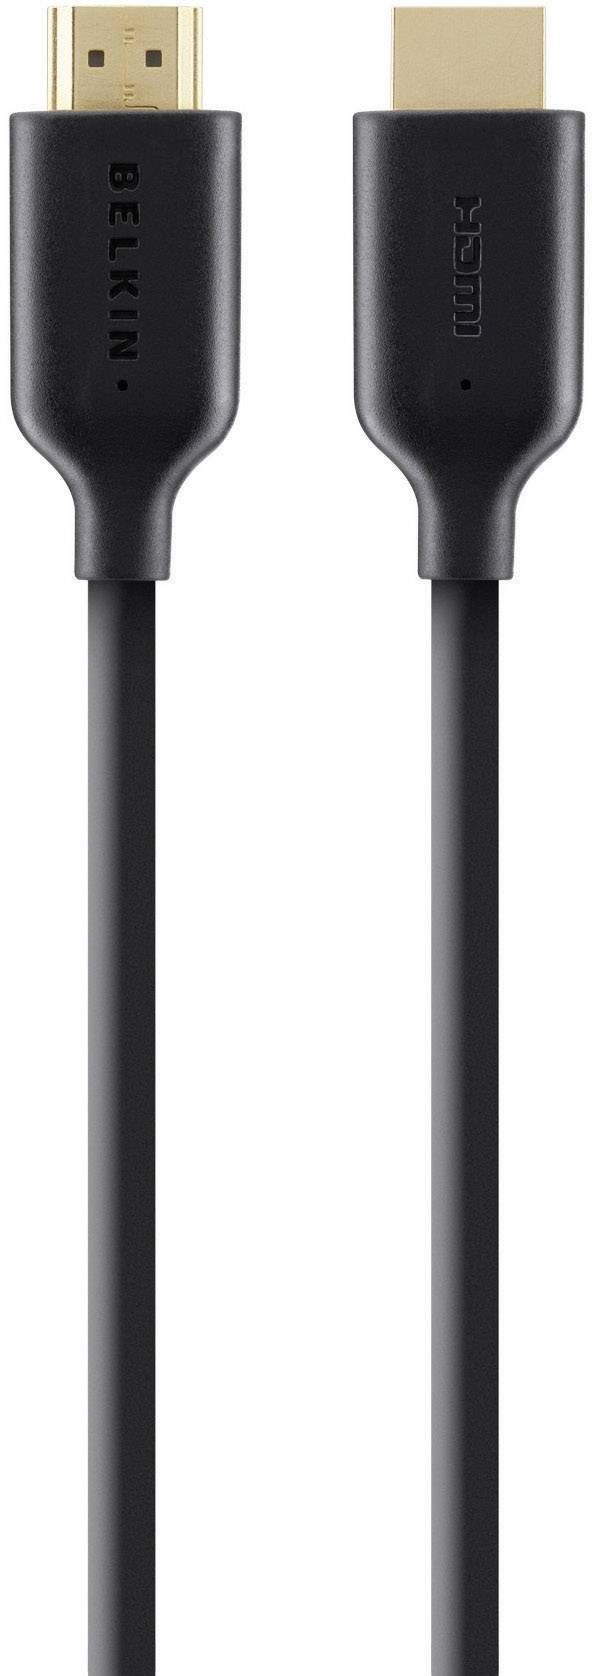 BELKIN HDMI Anschlusskabel [1x HDMI-Stecker - 1x HDMI-Stecker] 5 m Schwarz